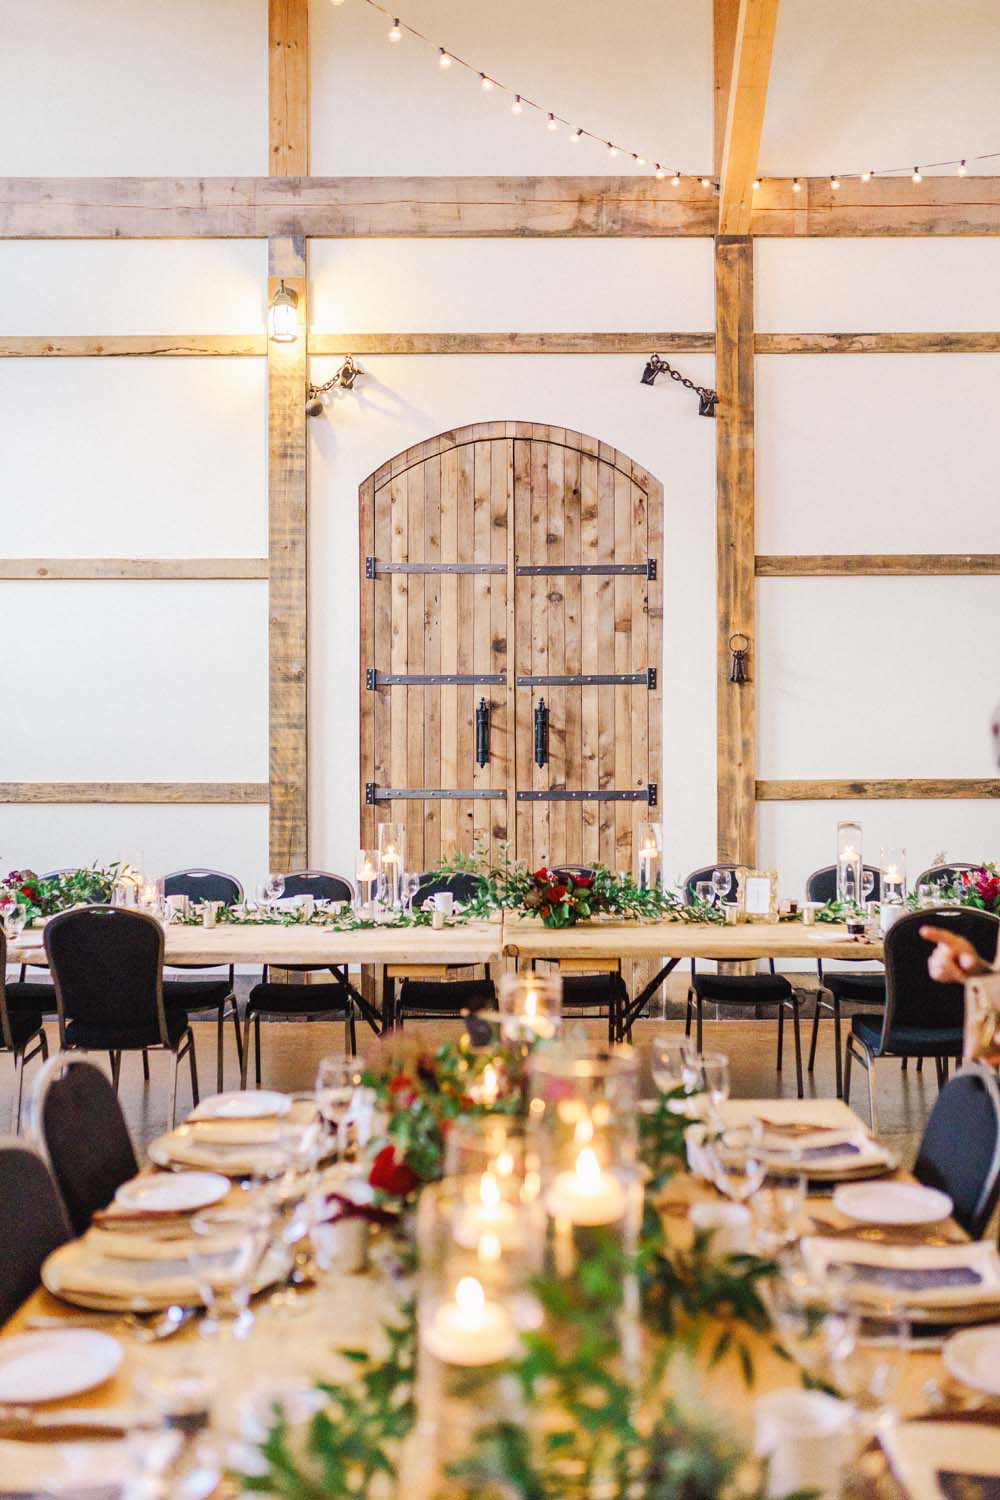 An Enchanting Vineyard Wedding in Ottawa - Reception venue